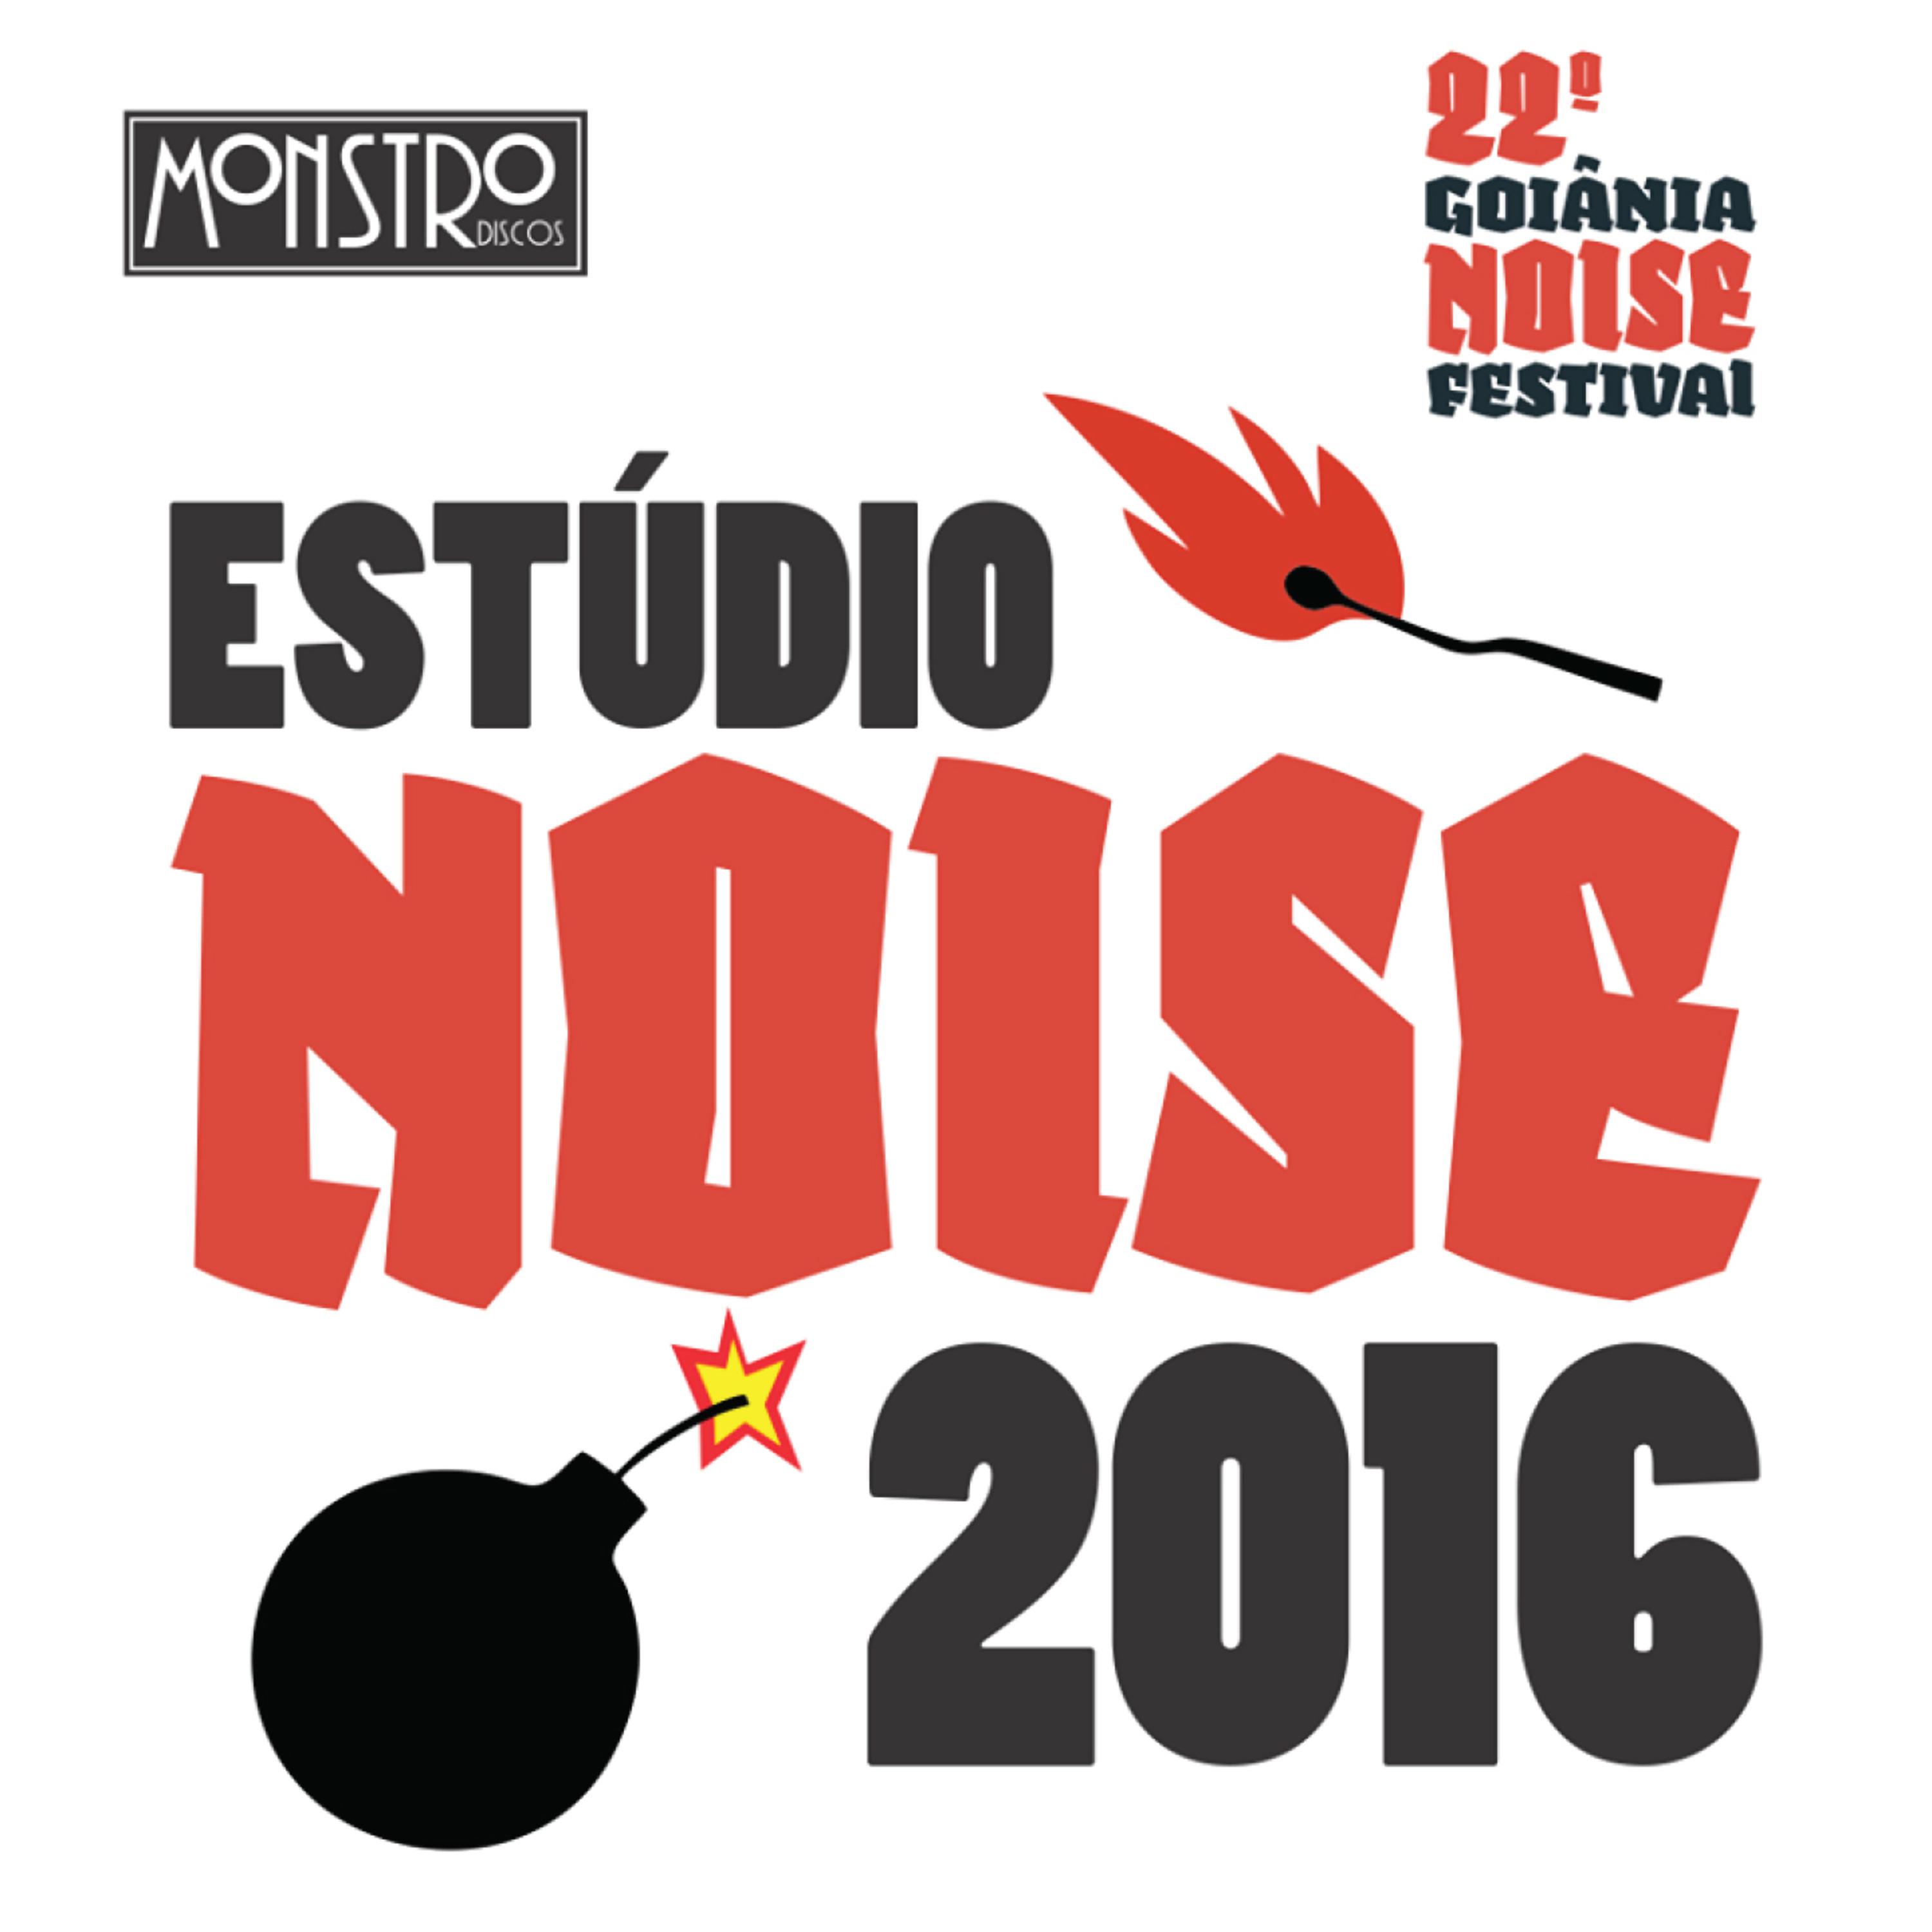 Estúdio Noise 2016